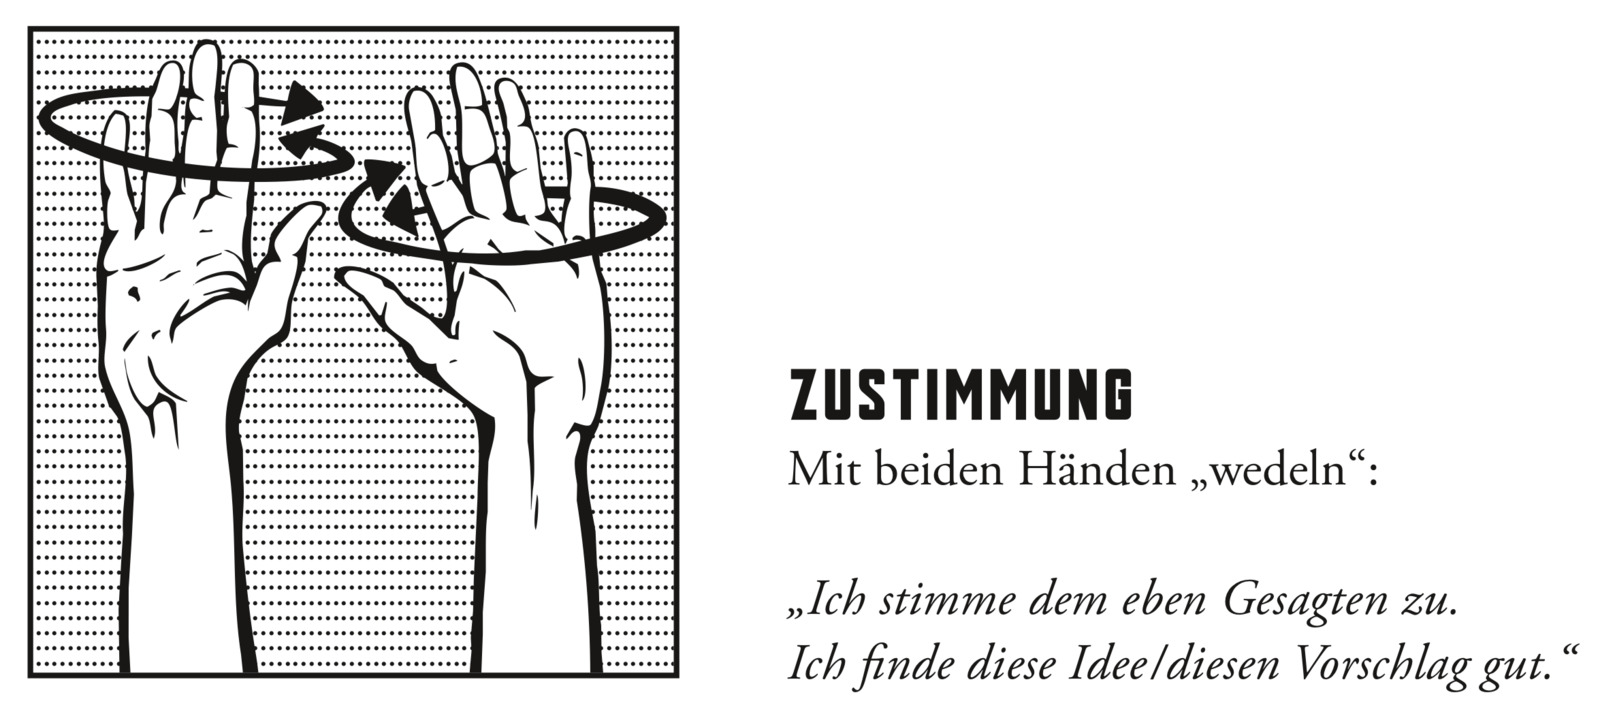 Diskussionshandzeichen „Zustimmung“, Bild: Ausschnitt aus PDF. Quelle: http://www.kommunikationskollektiv.org